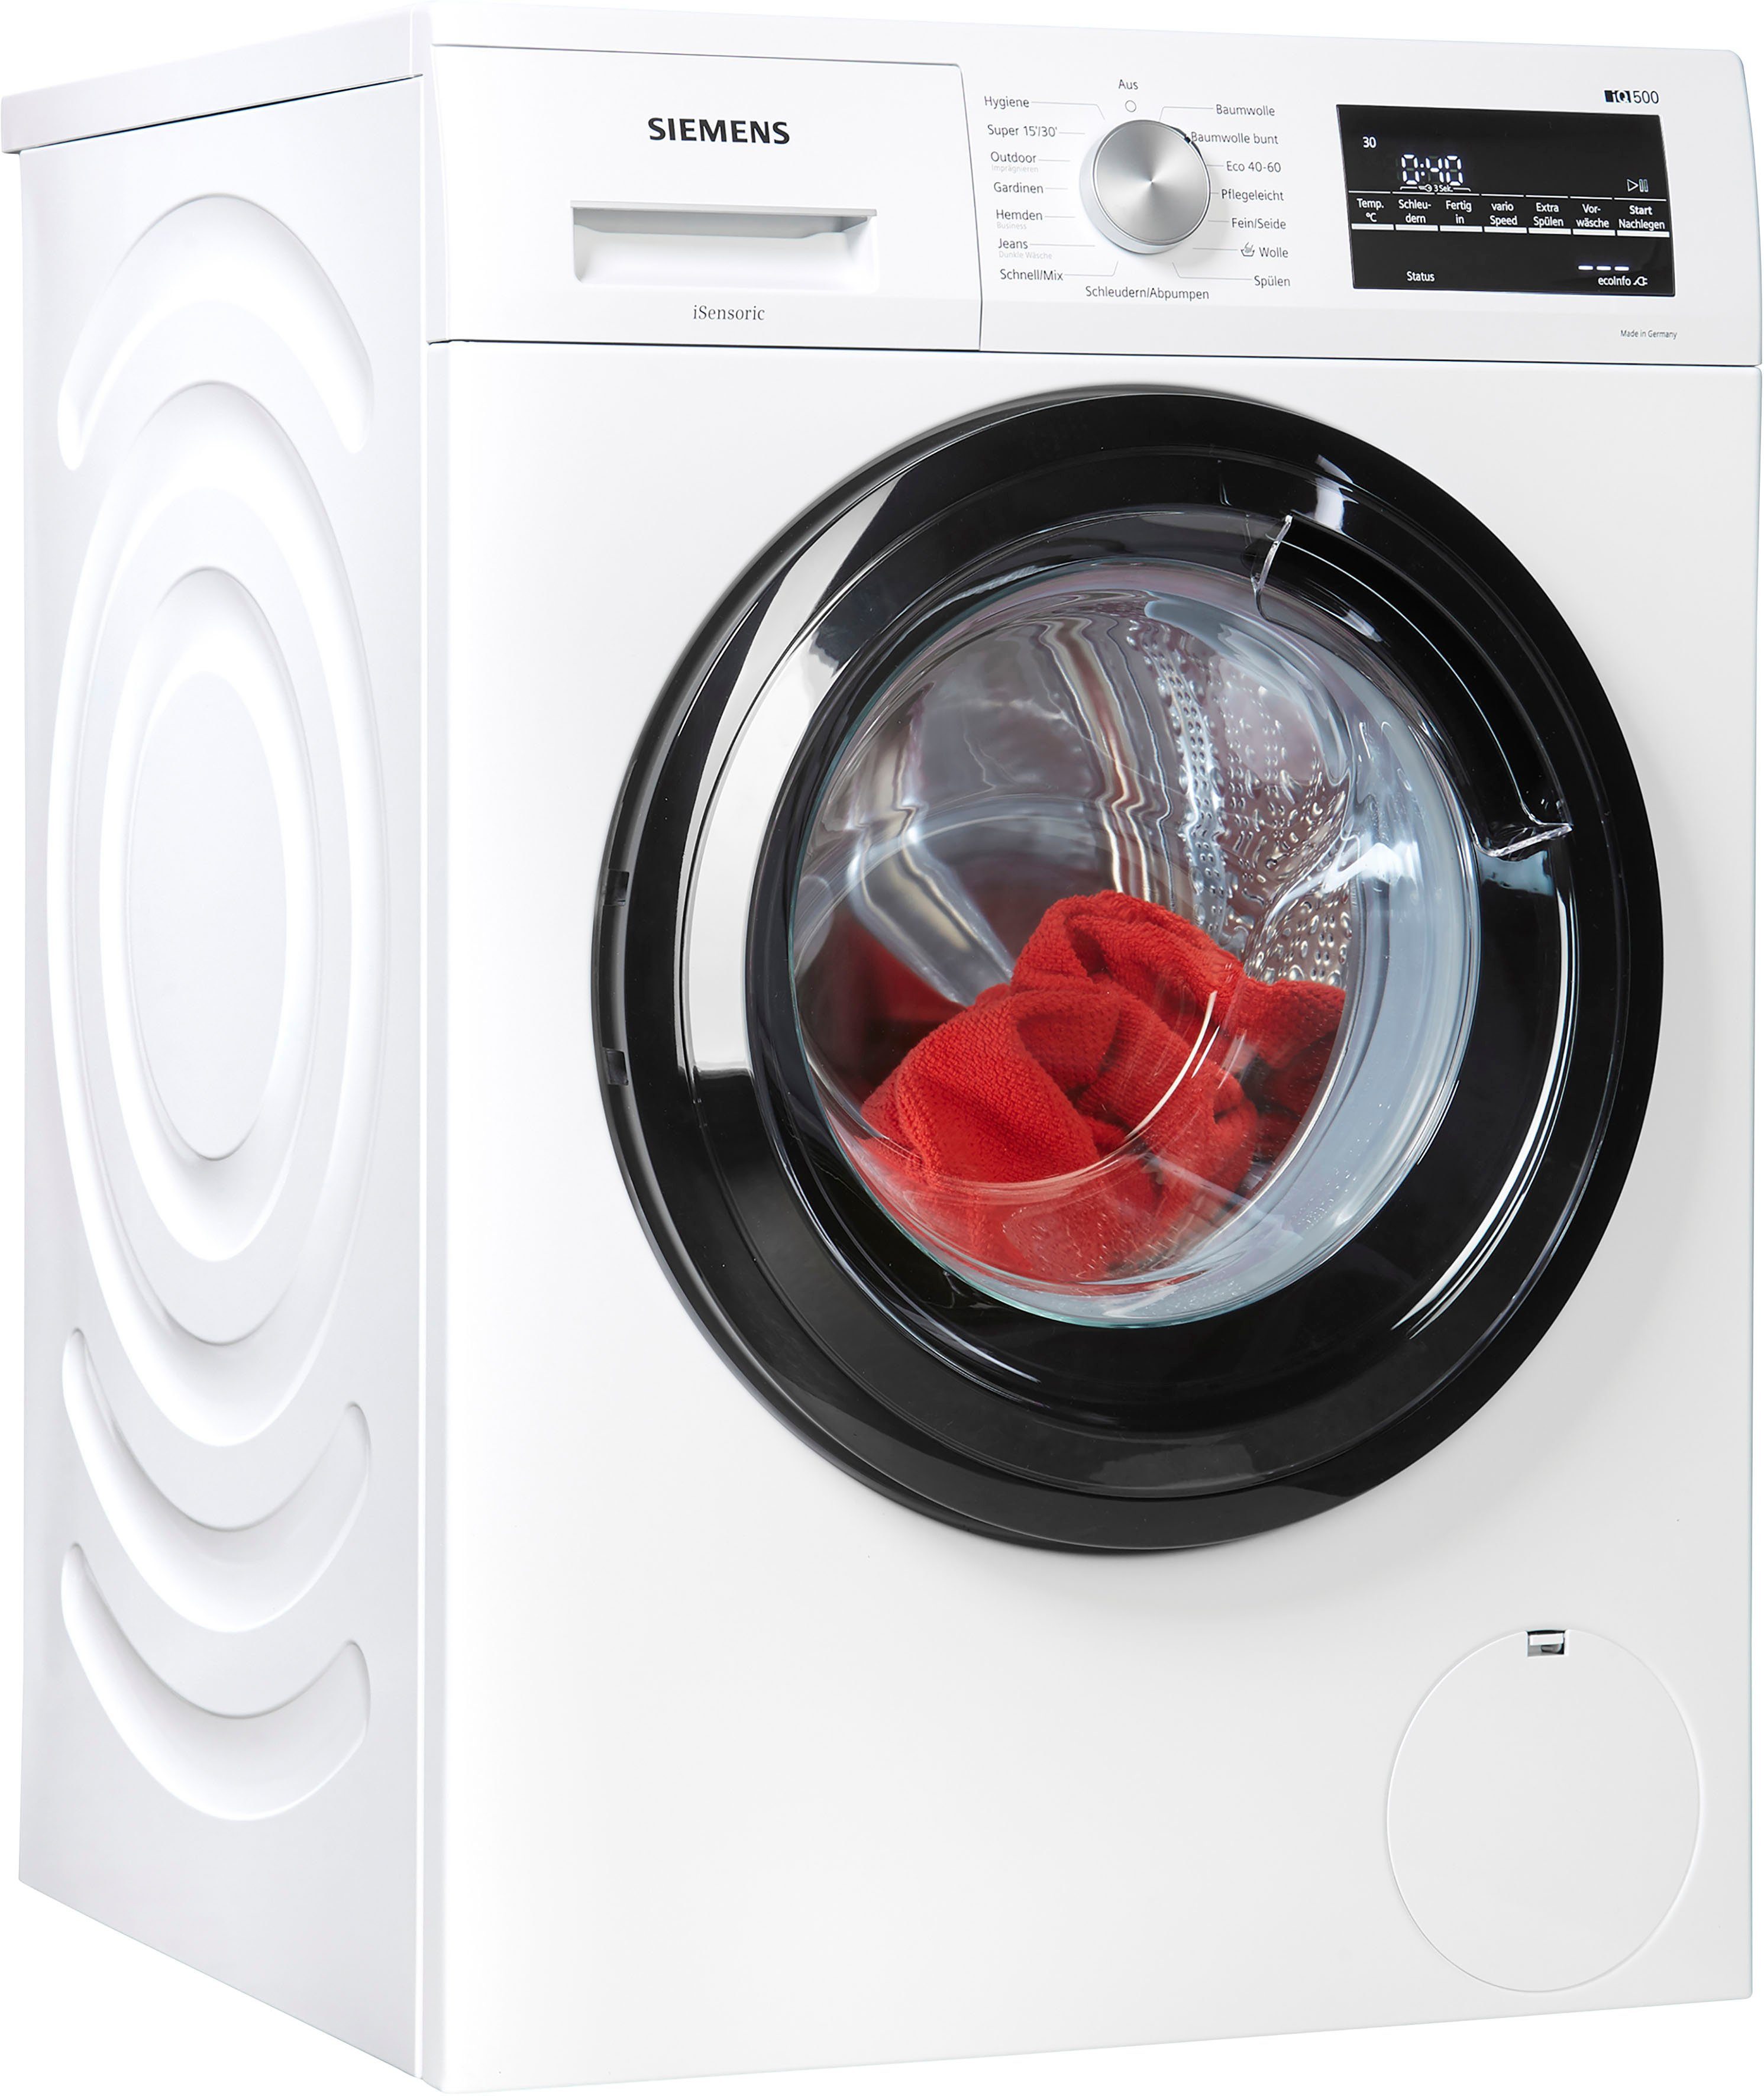 SIEMENS Waschmaschine iQ500 WM14G400, 8 kg, 1400 U/min online kaufen | OTTO